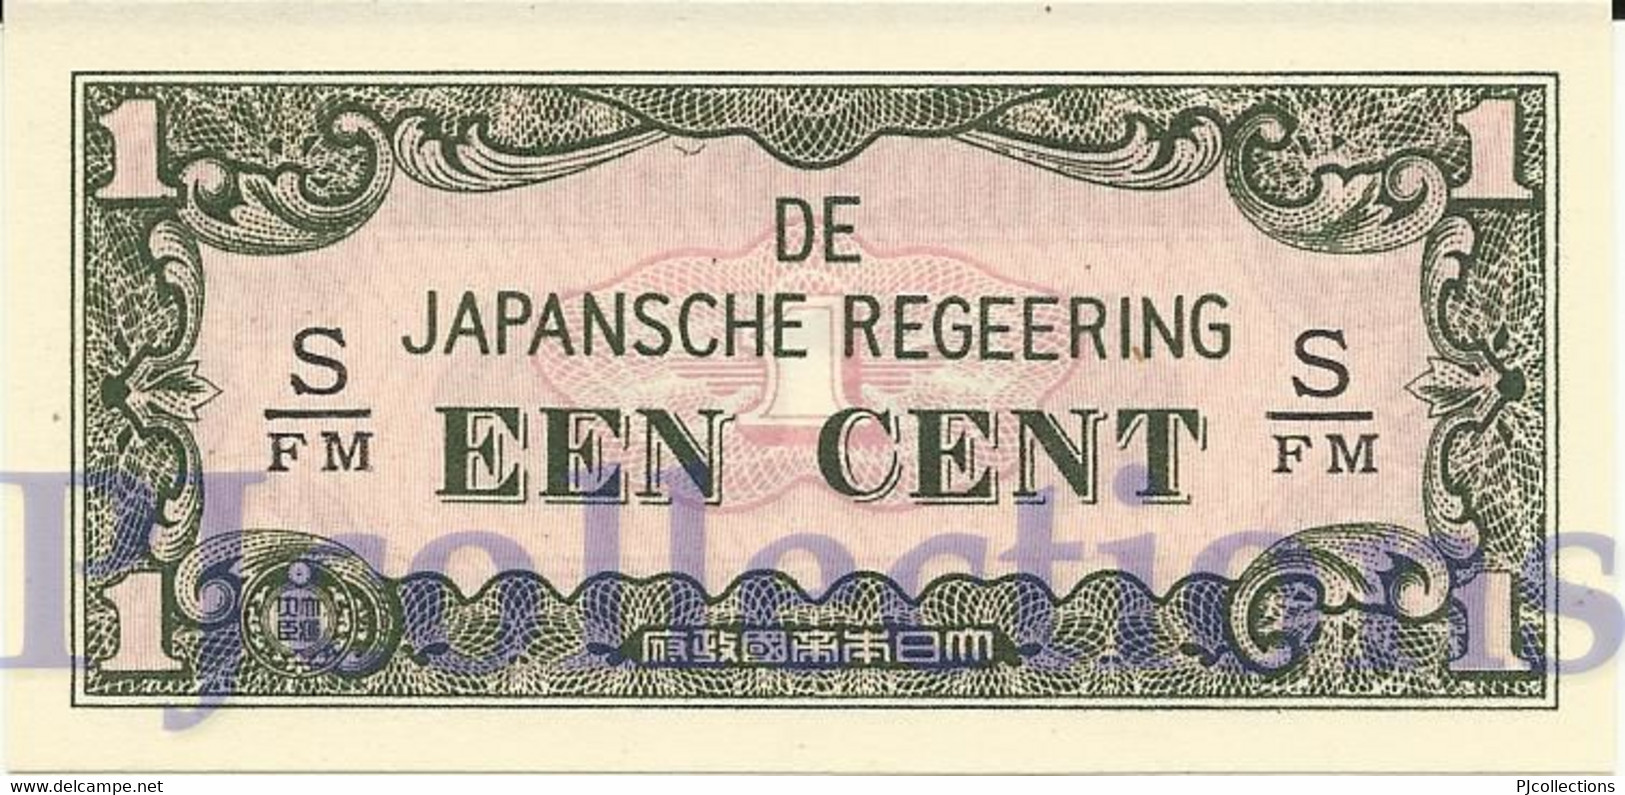 NETHERLANDS INDIES 1 CENT 1942 PICK 119b UNC - Indes Neerlandesas